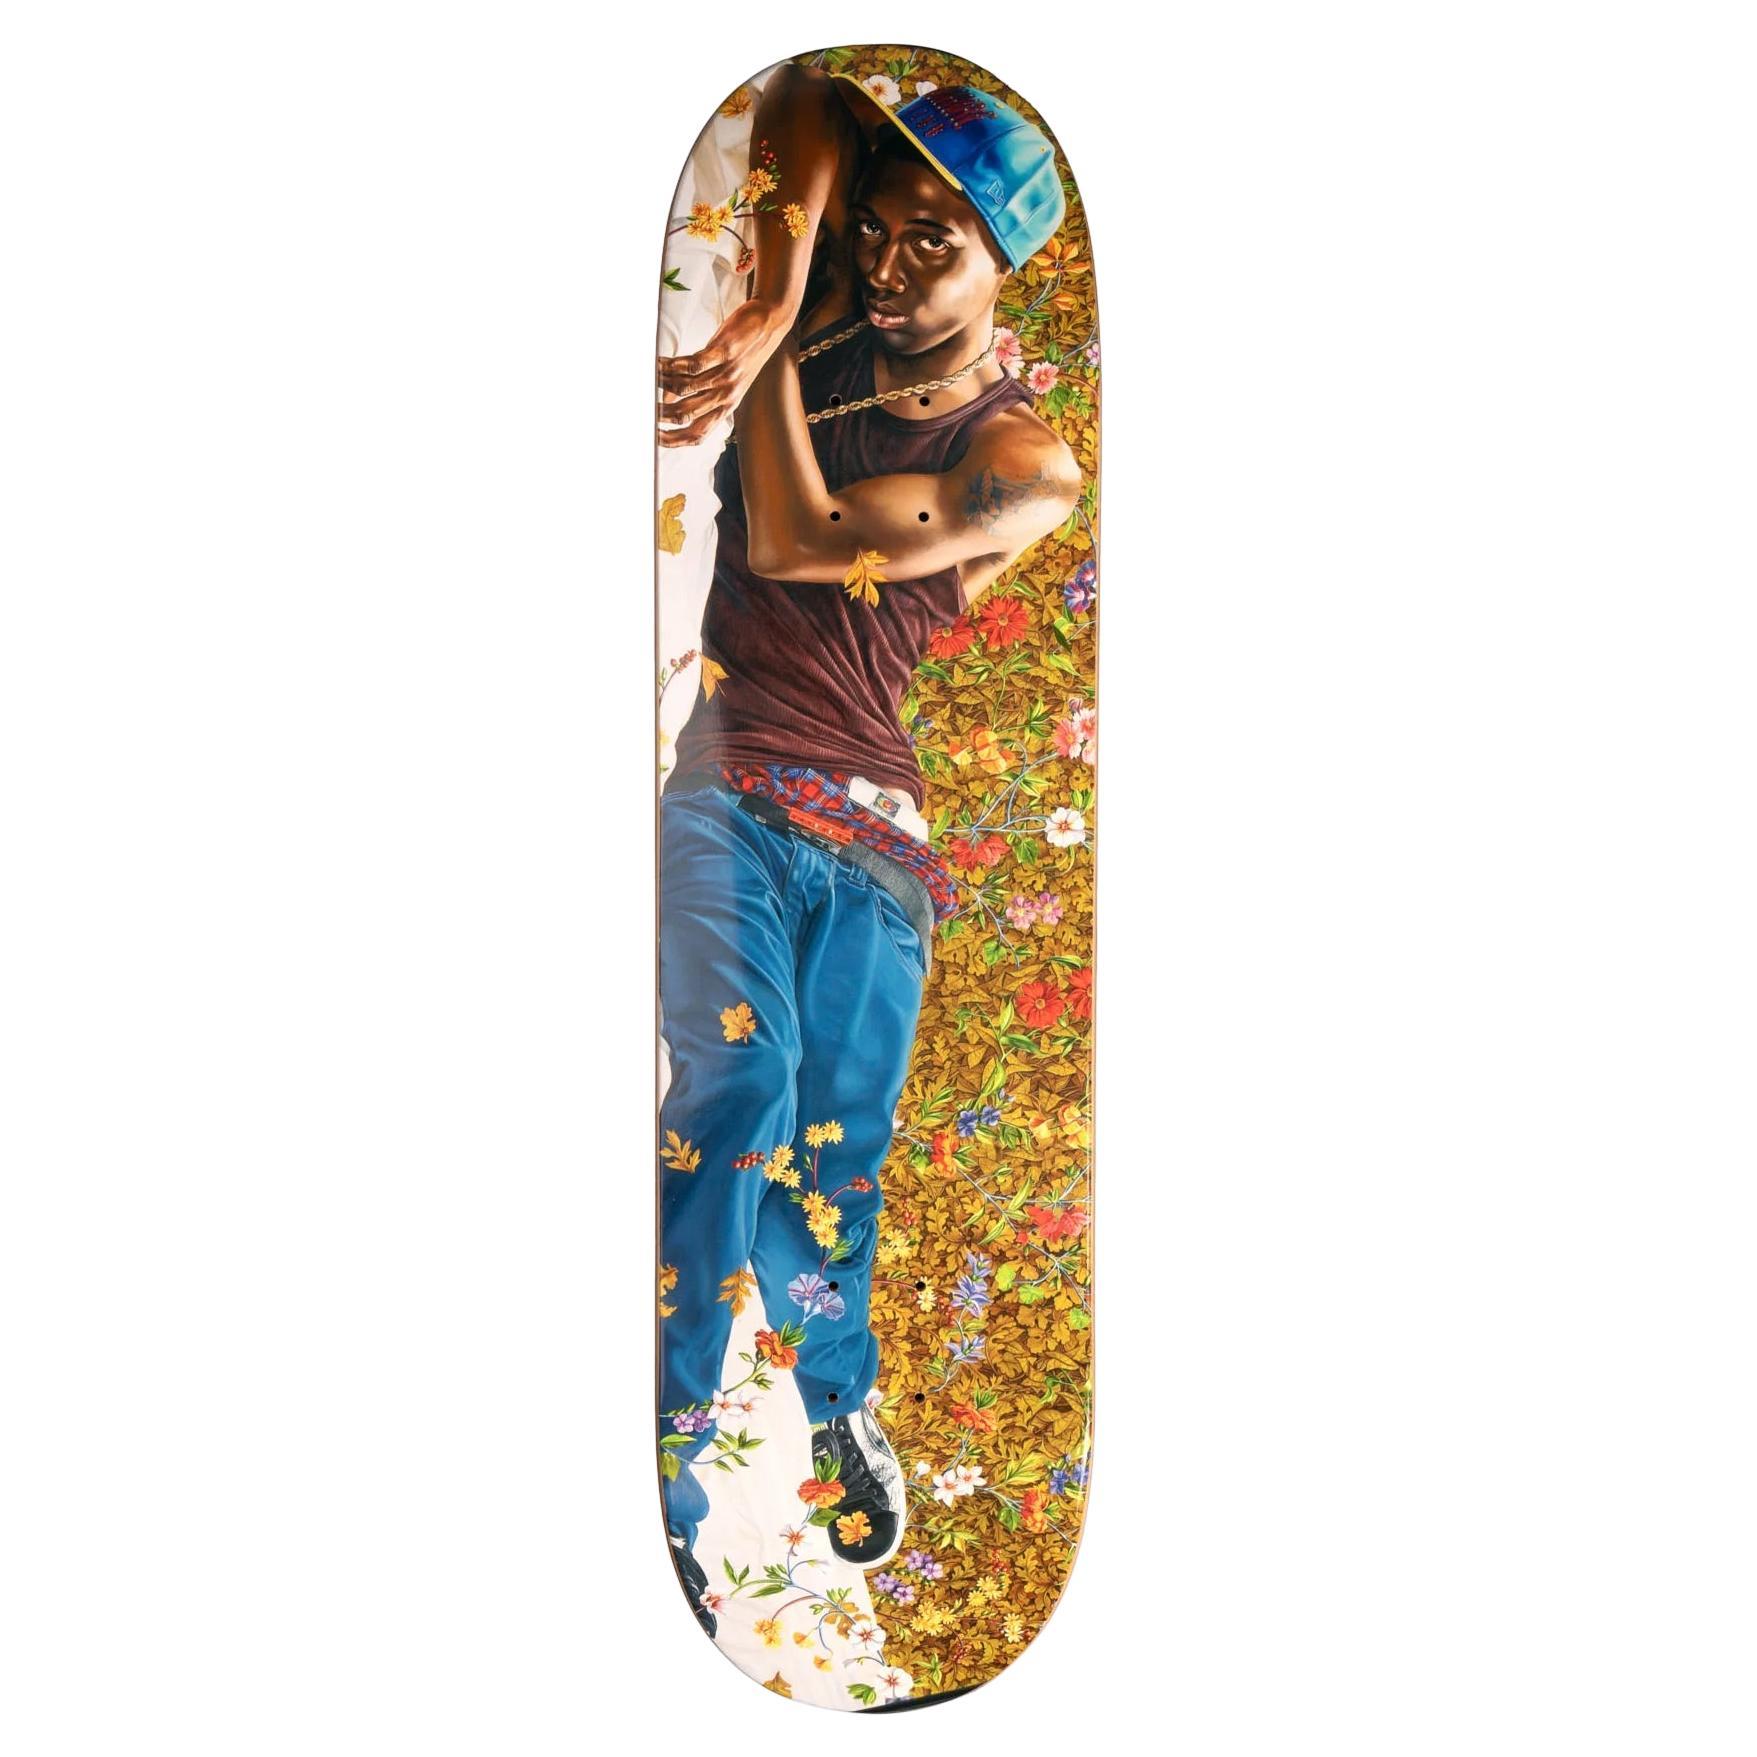 Skateboard de Morpheus par Kehinde Wiley